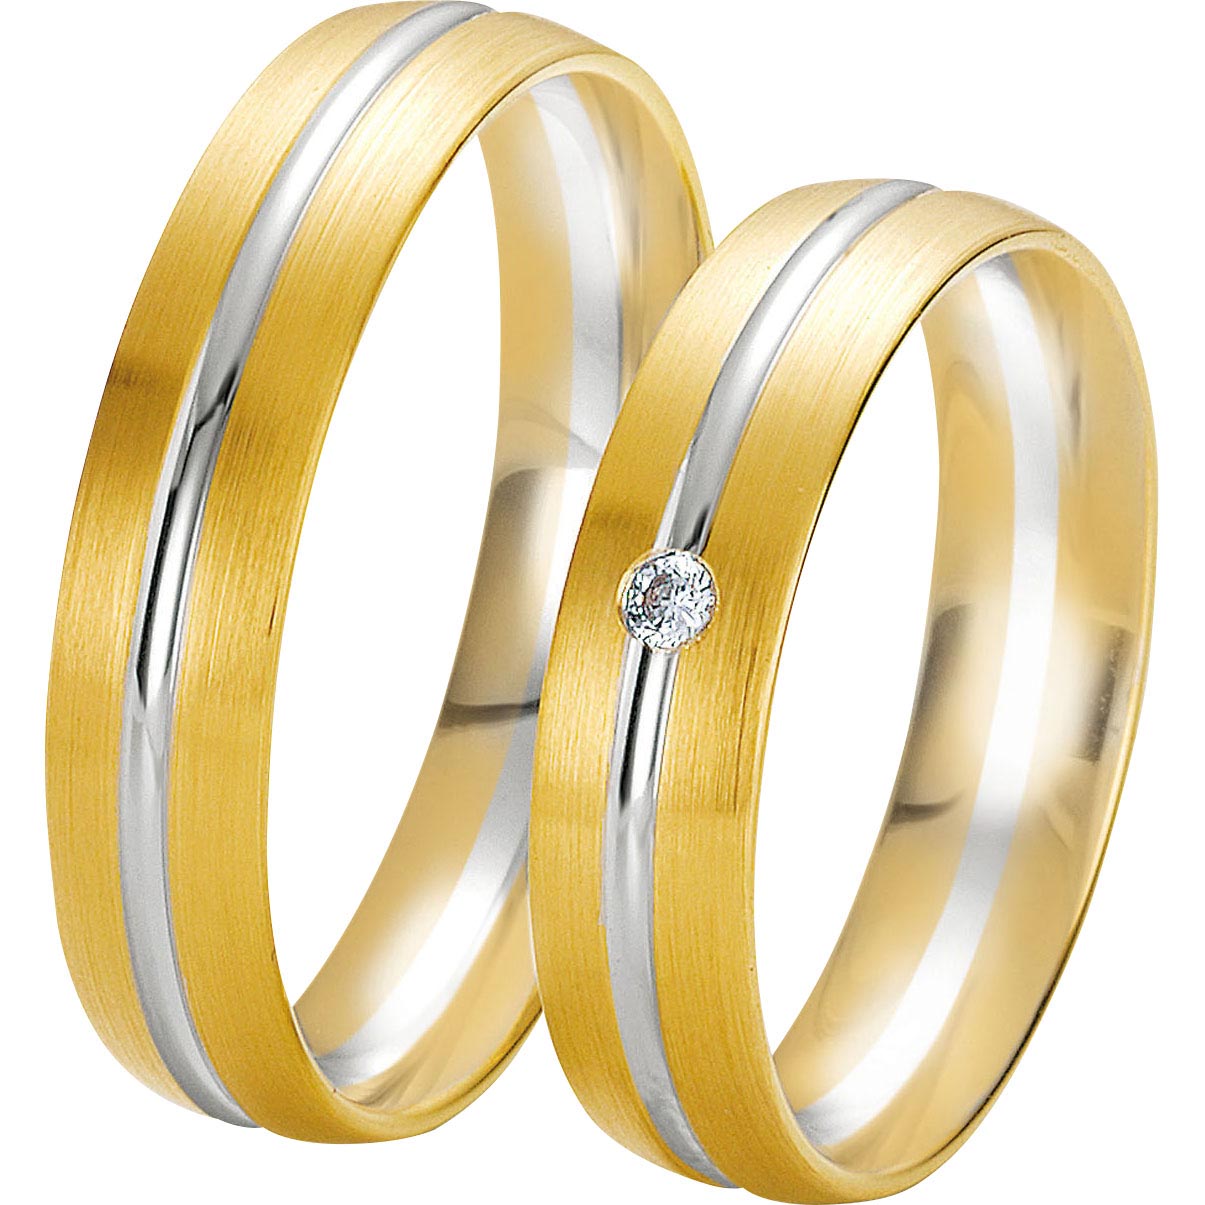 Anello in oro su misura all'ingrosso Produttore di fonti di gioielli personalizzati all'ingrosso di gioielli raffinati e OEM / ODM